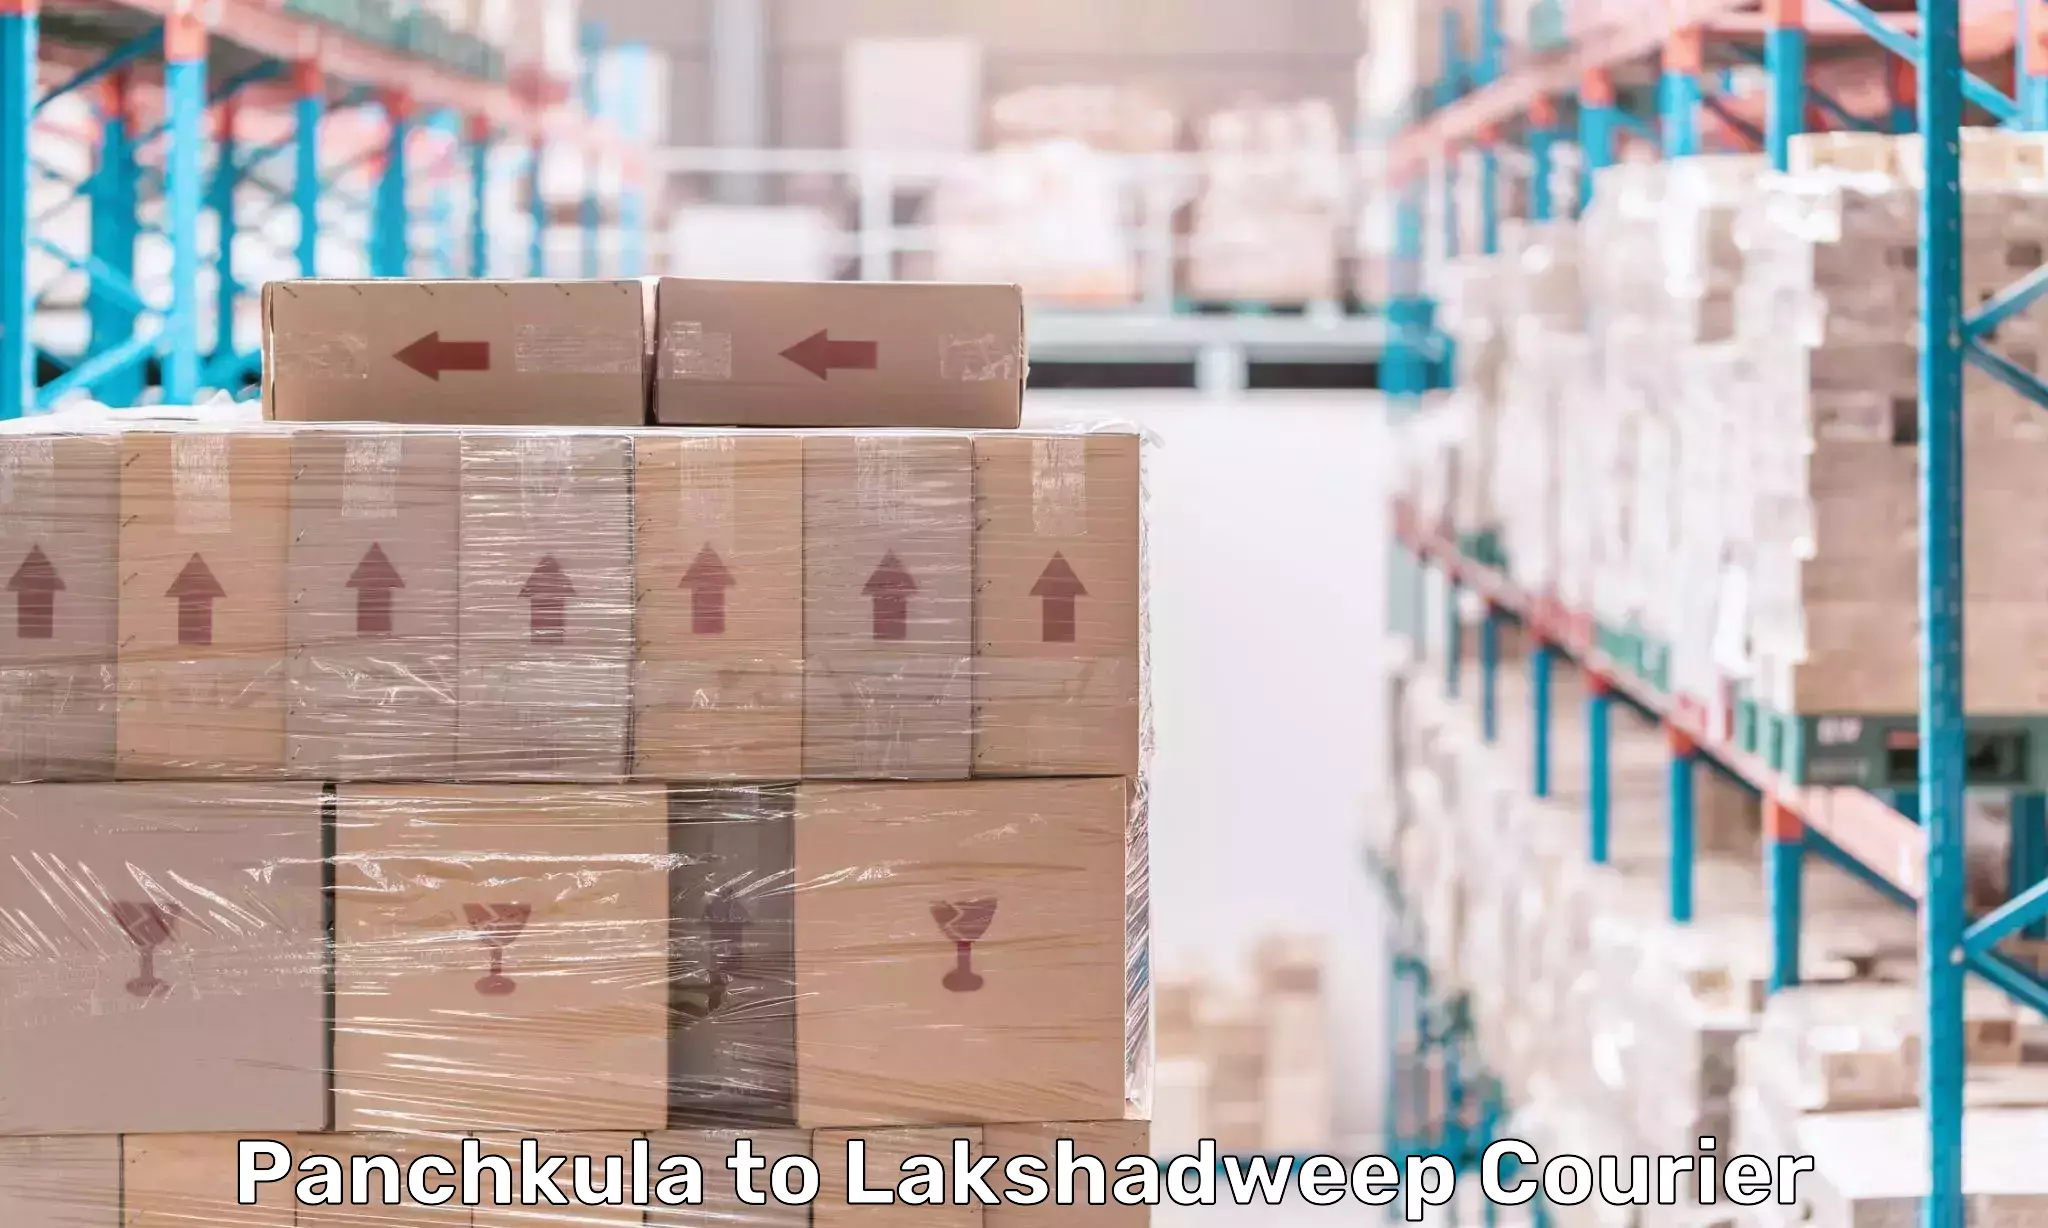 24/7 shipping services Panchkula to Lakshadweep